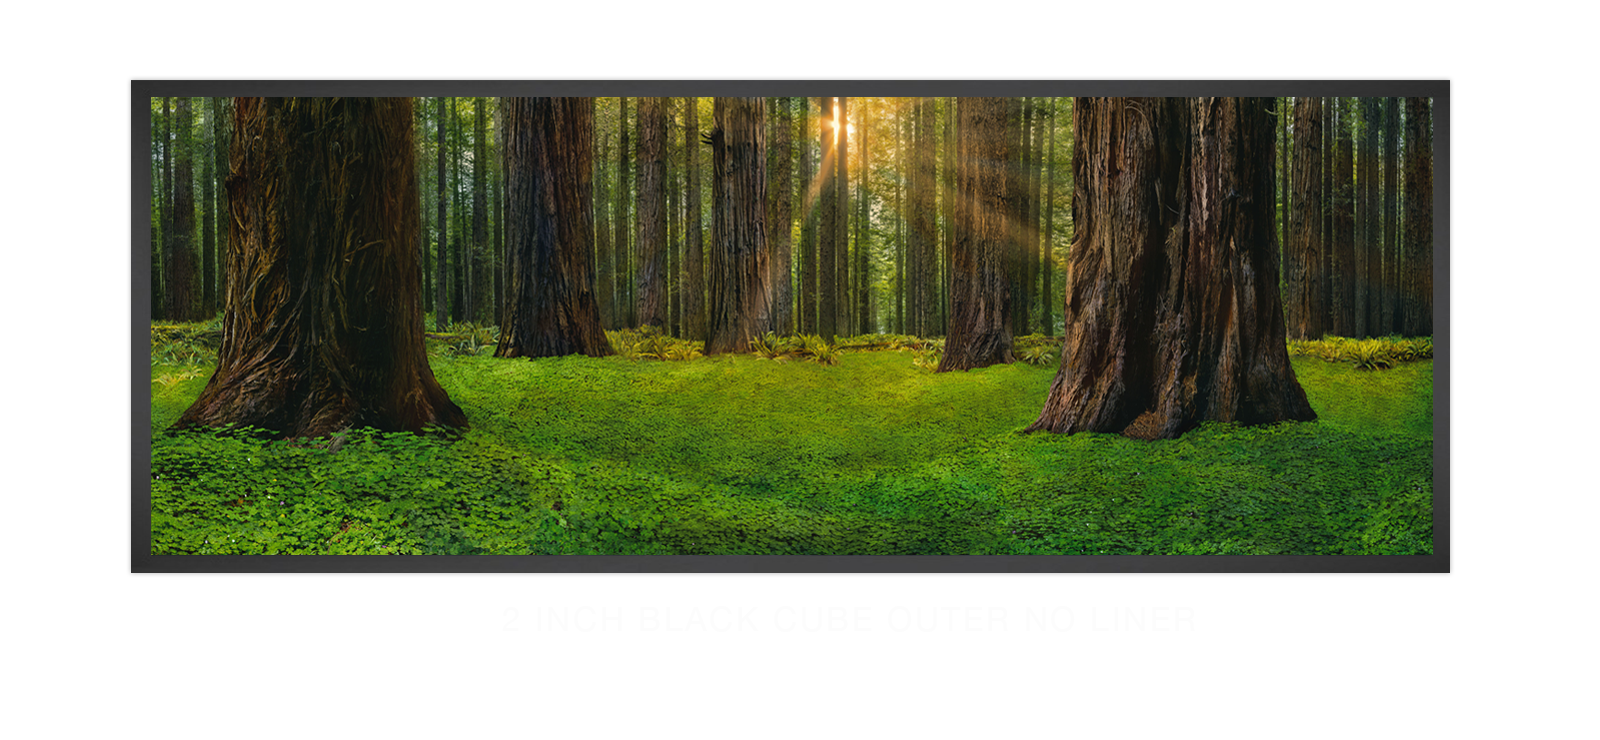 10SANCTUS_TITANICUS 2 Inch Black Cube Outer w_No Liner T